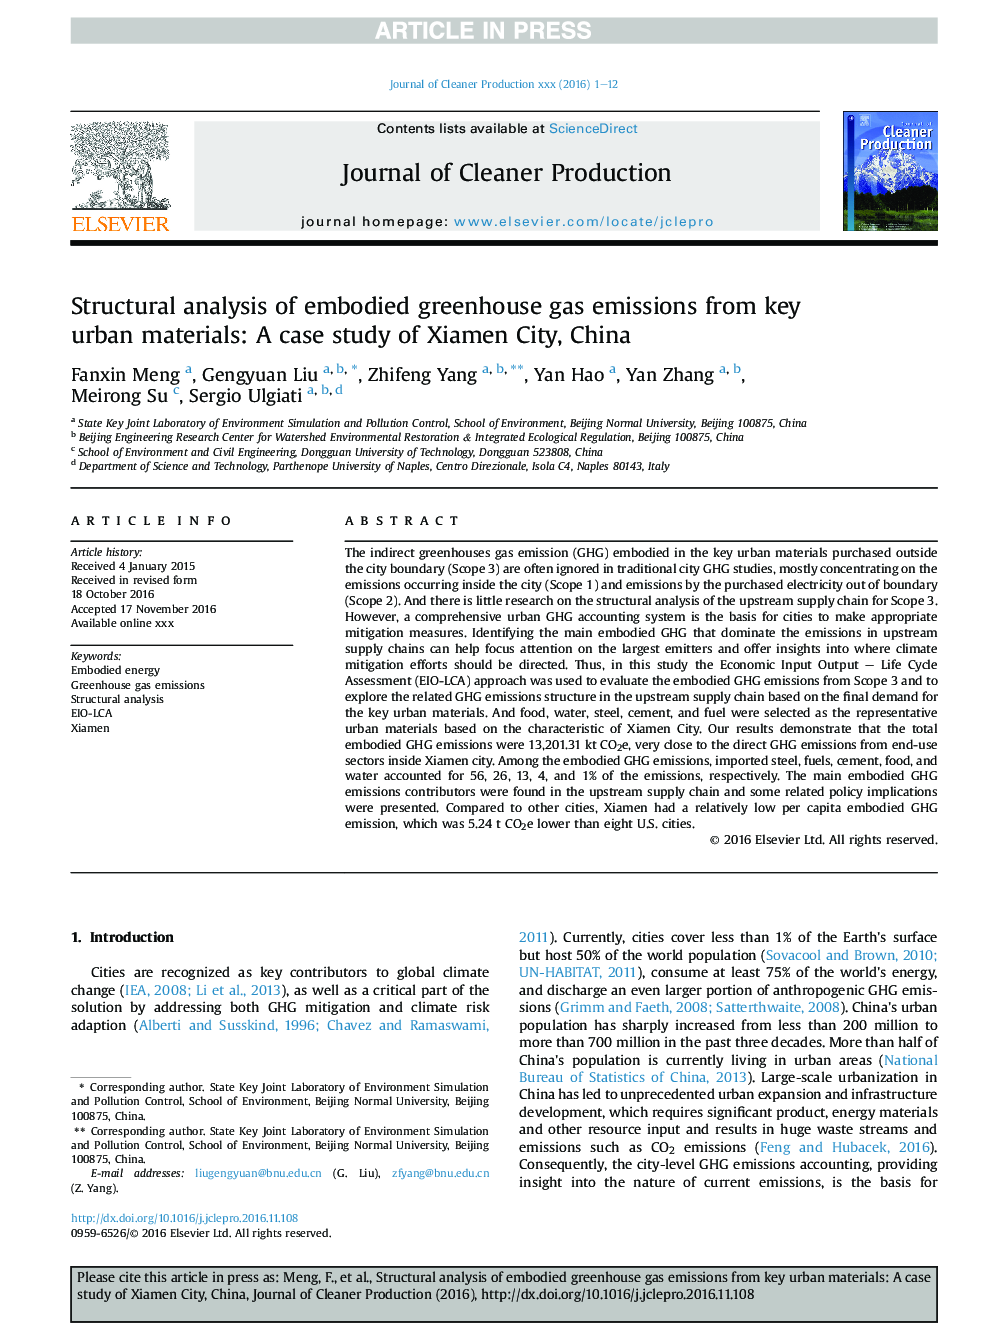 تجزیه و تحلیل ساختار انتشار گازهای گلخانهای مجاز از مواد اصلی کلیدی شهری: مطالعه موردی شهر چیانگ، چین 